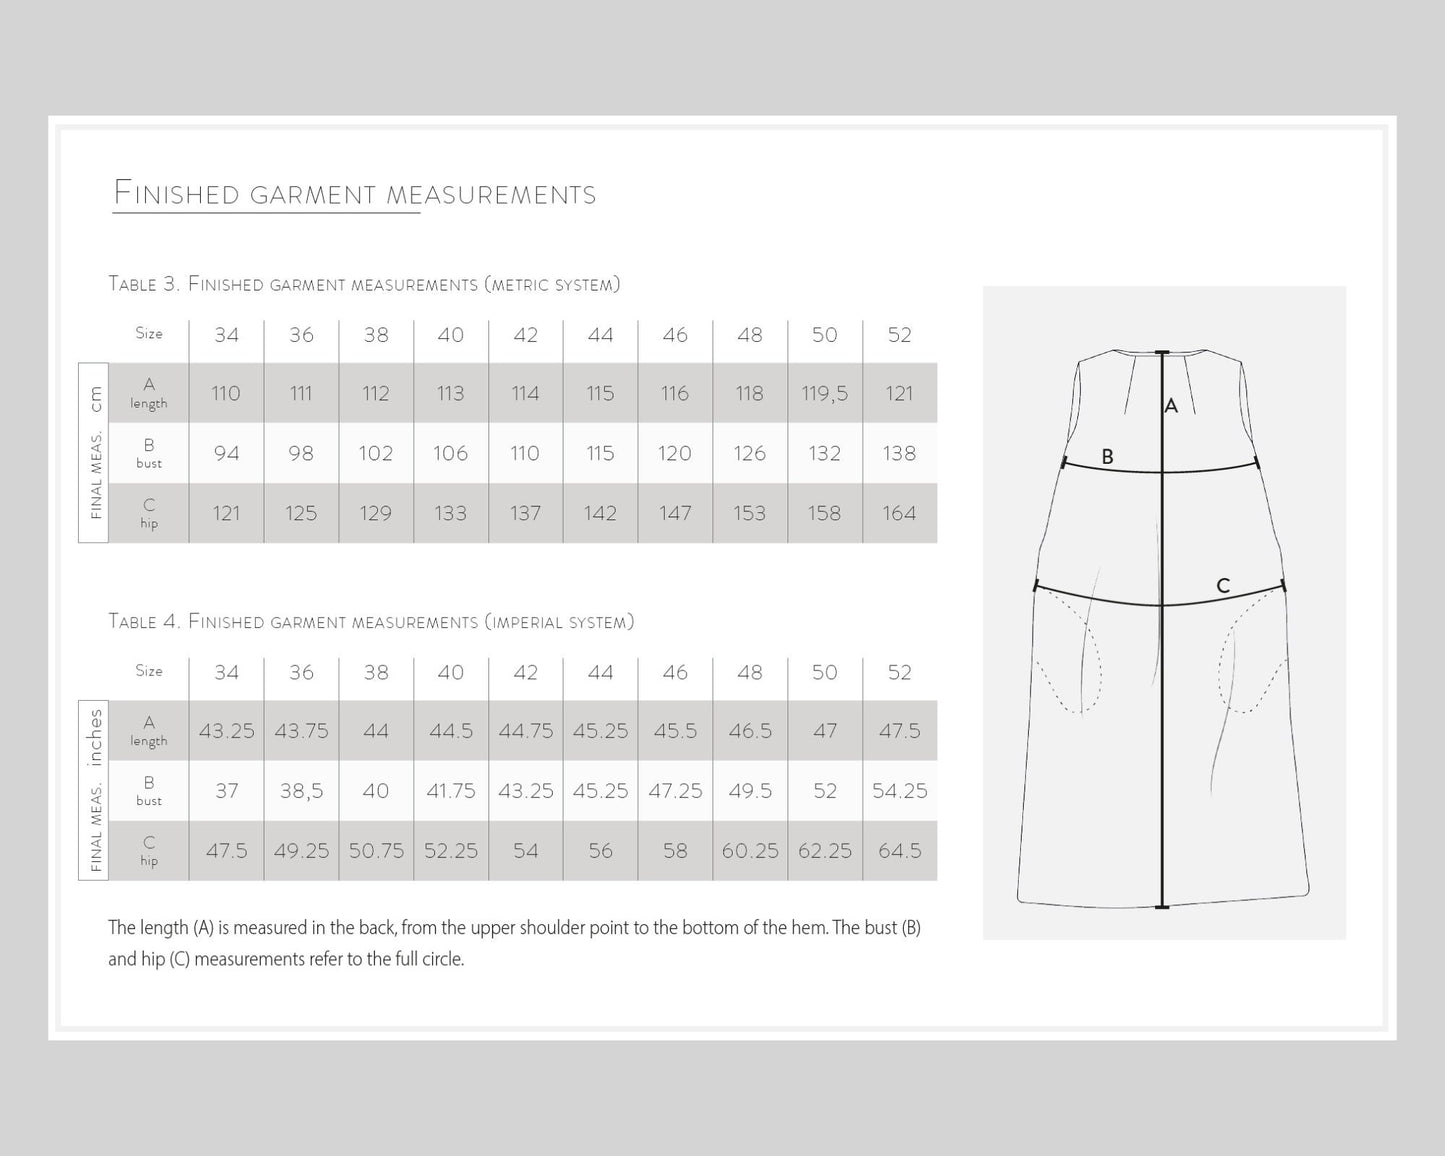 NOA Oversize Dress - sewing pattern